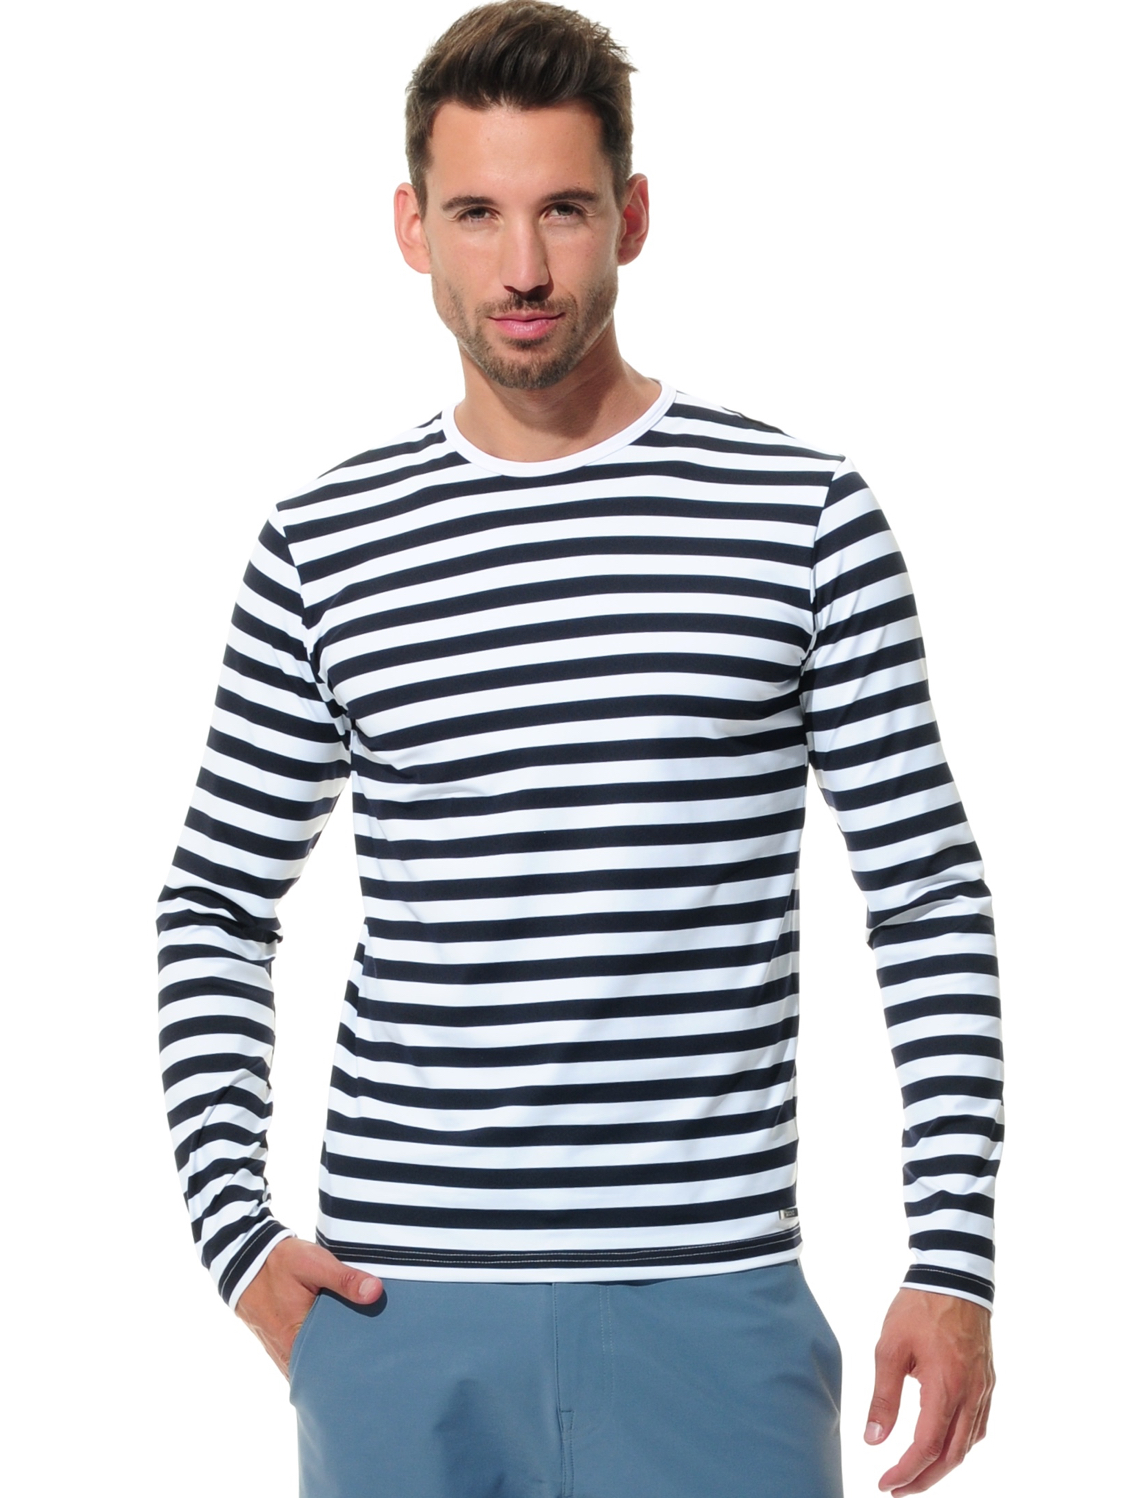 Stripe Langarm Shirt night blue/white